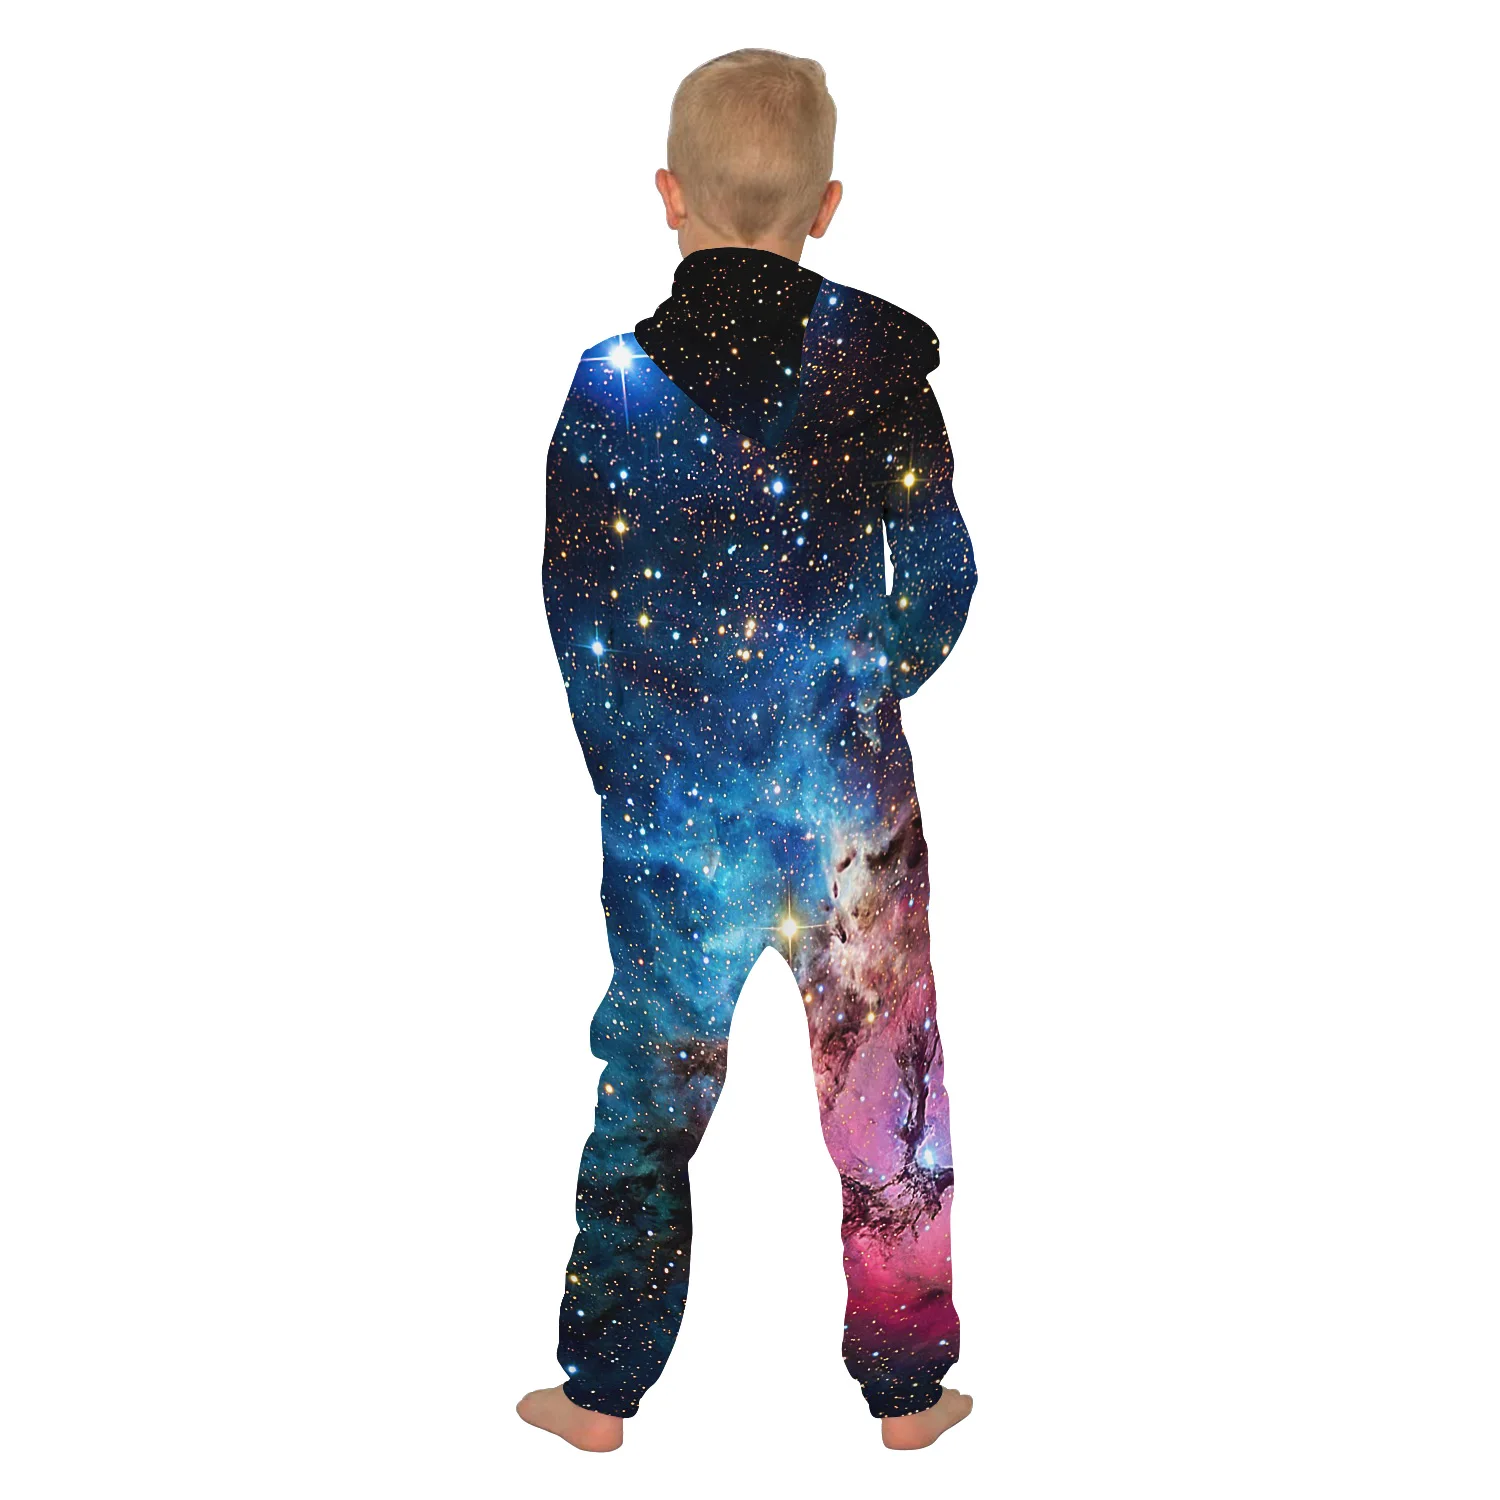 Детская домашняя одежда с принтом космоса, галактики, звезд, унисекс, свободная одежда для сна с капюшоном, на молнии, комбинезоны для девочек, плотные комбинезоны